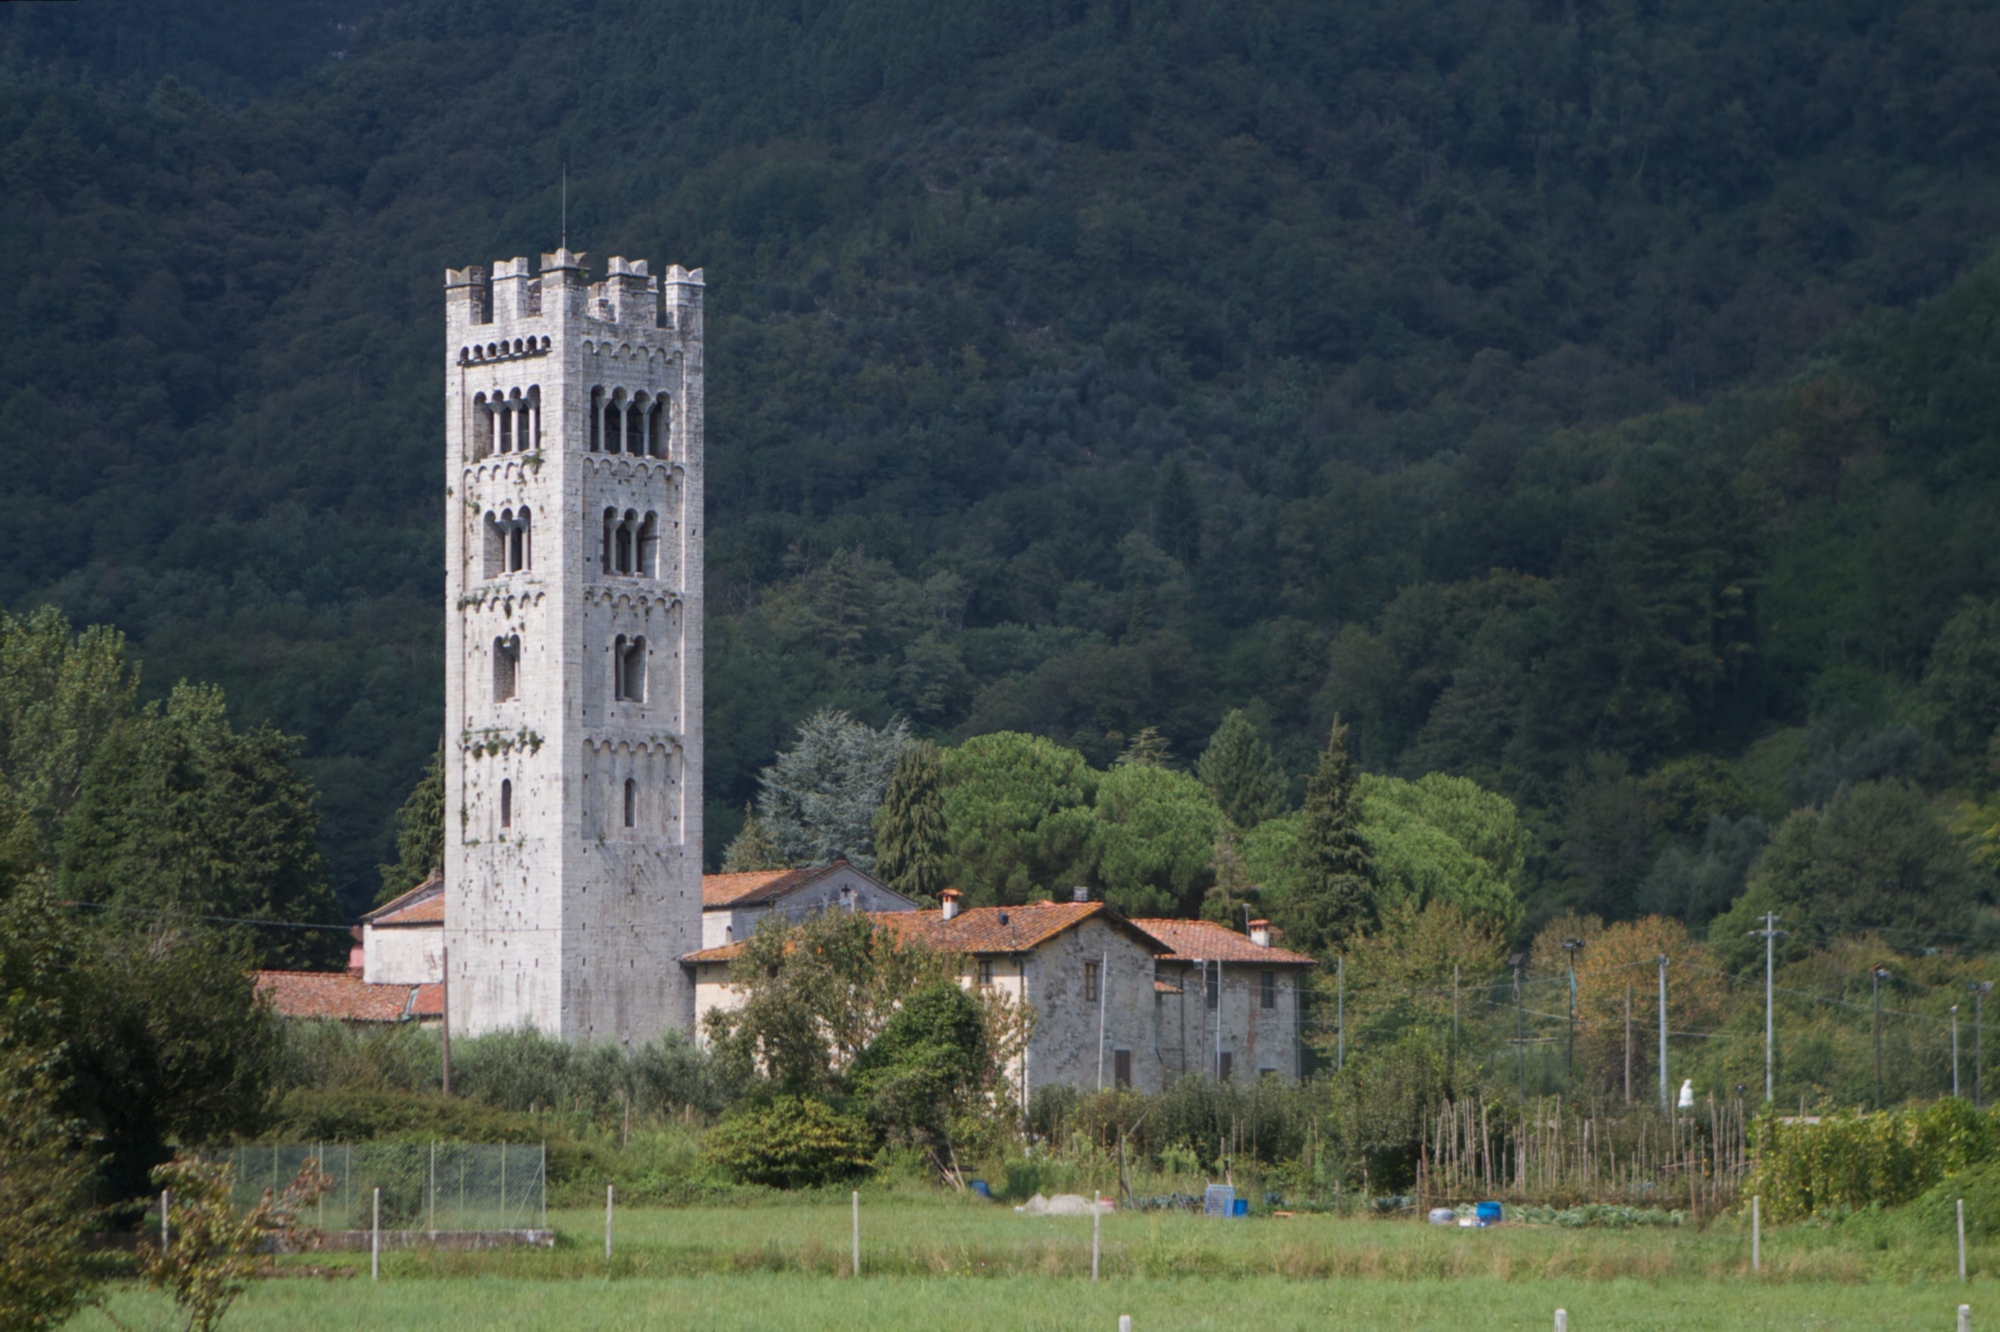 Church of Santa Maria a Diecimo